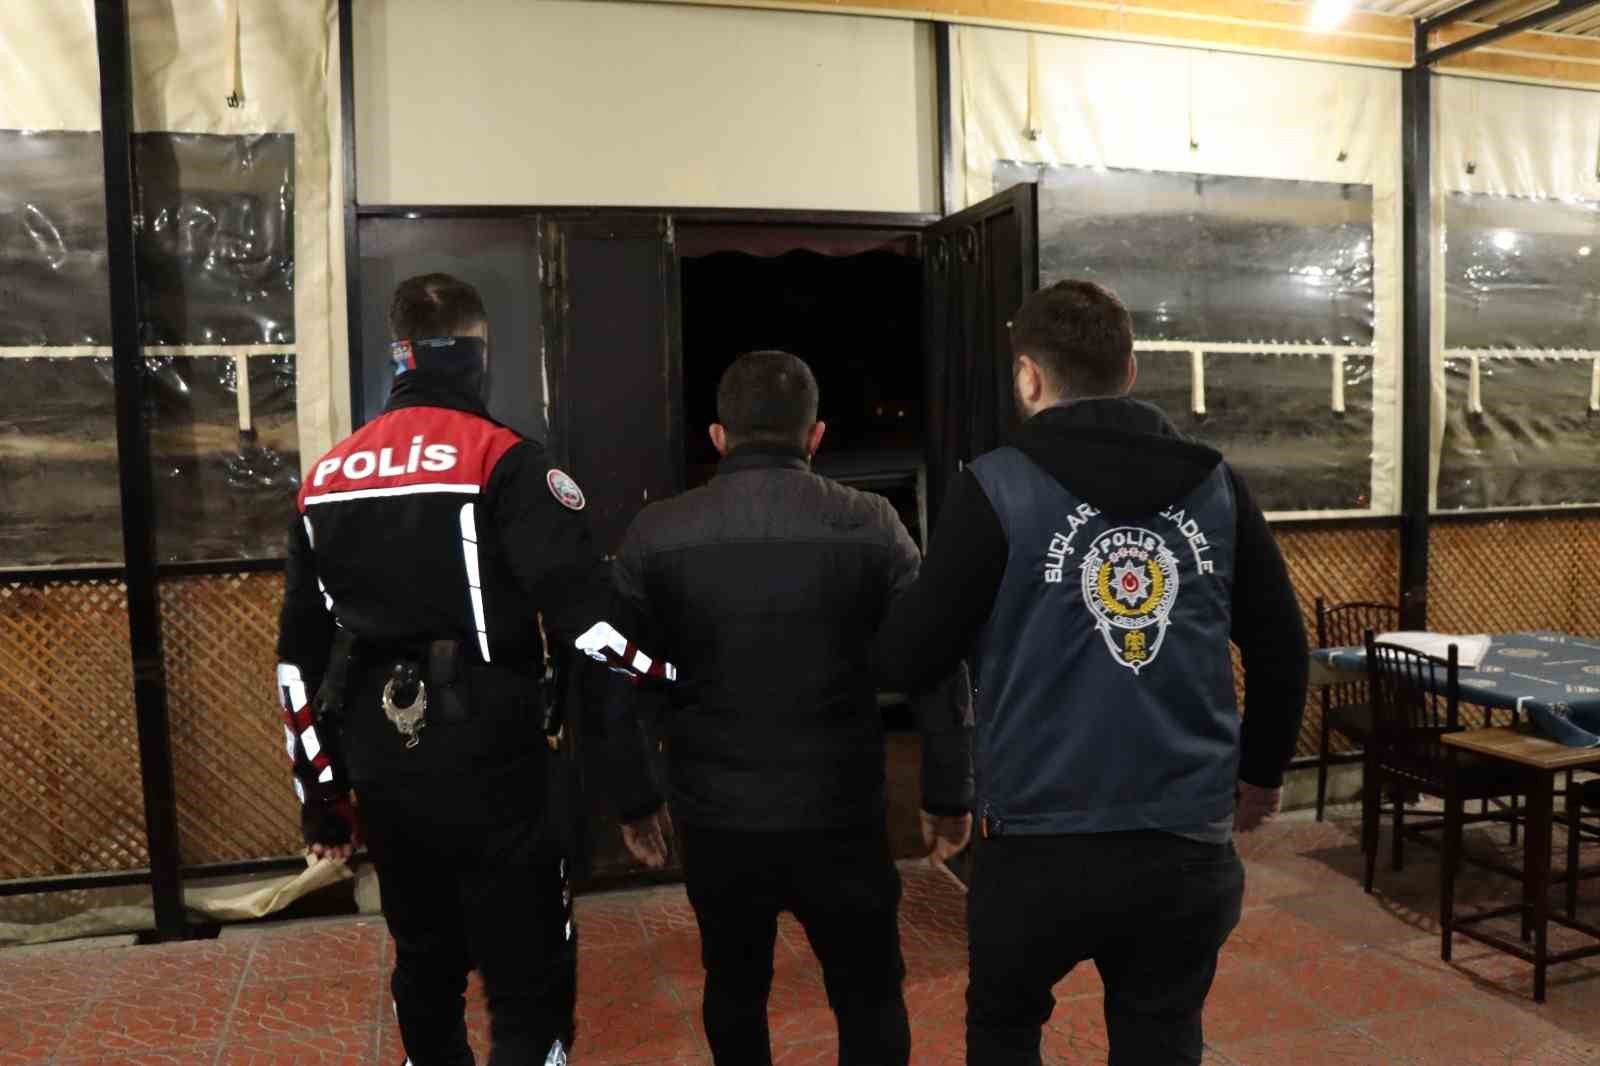 300 milyon tl transfer yapan bahis çetesi çökertildi:10 tutuklama